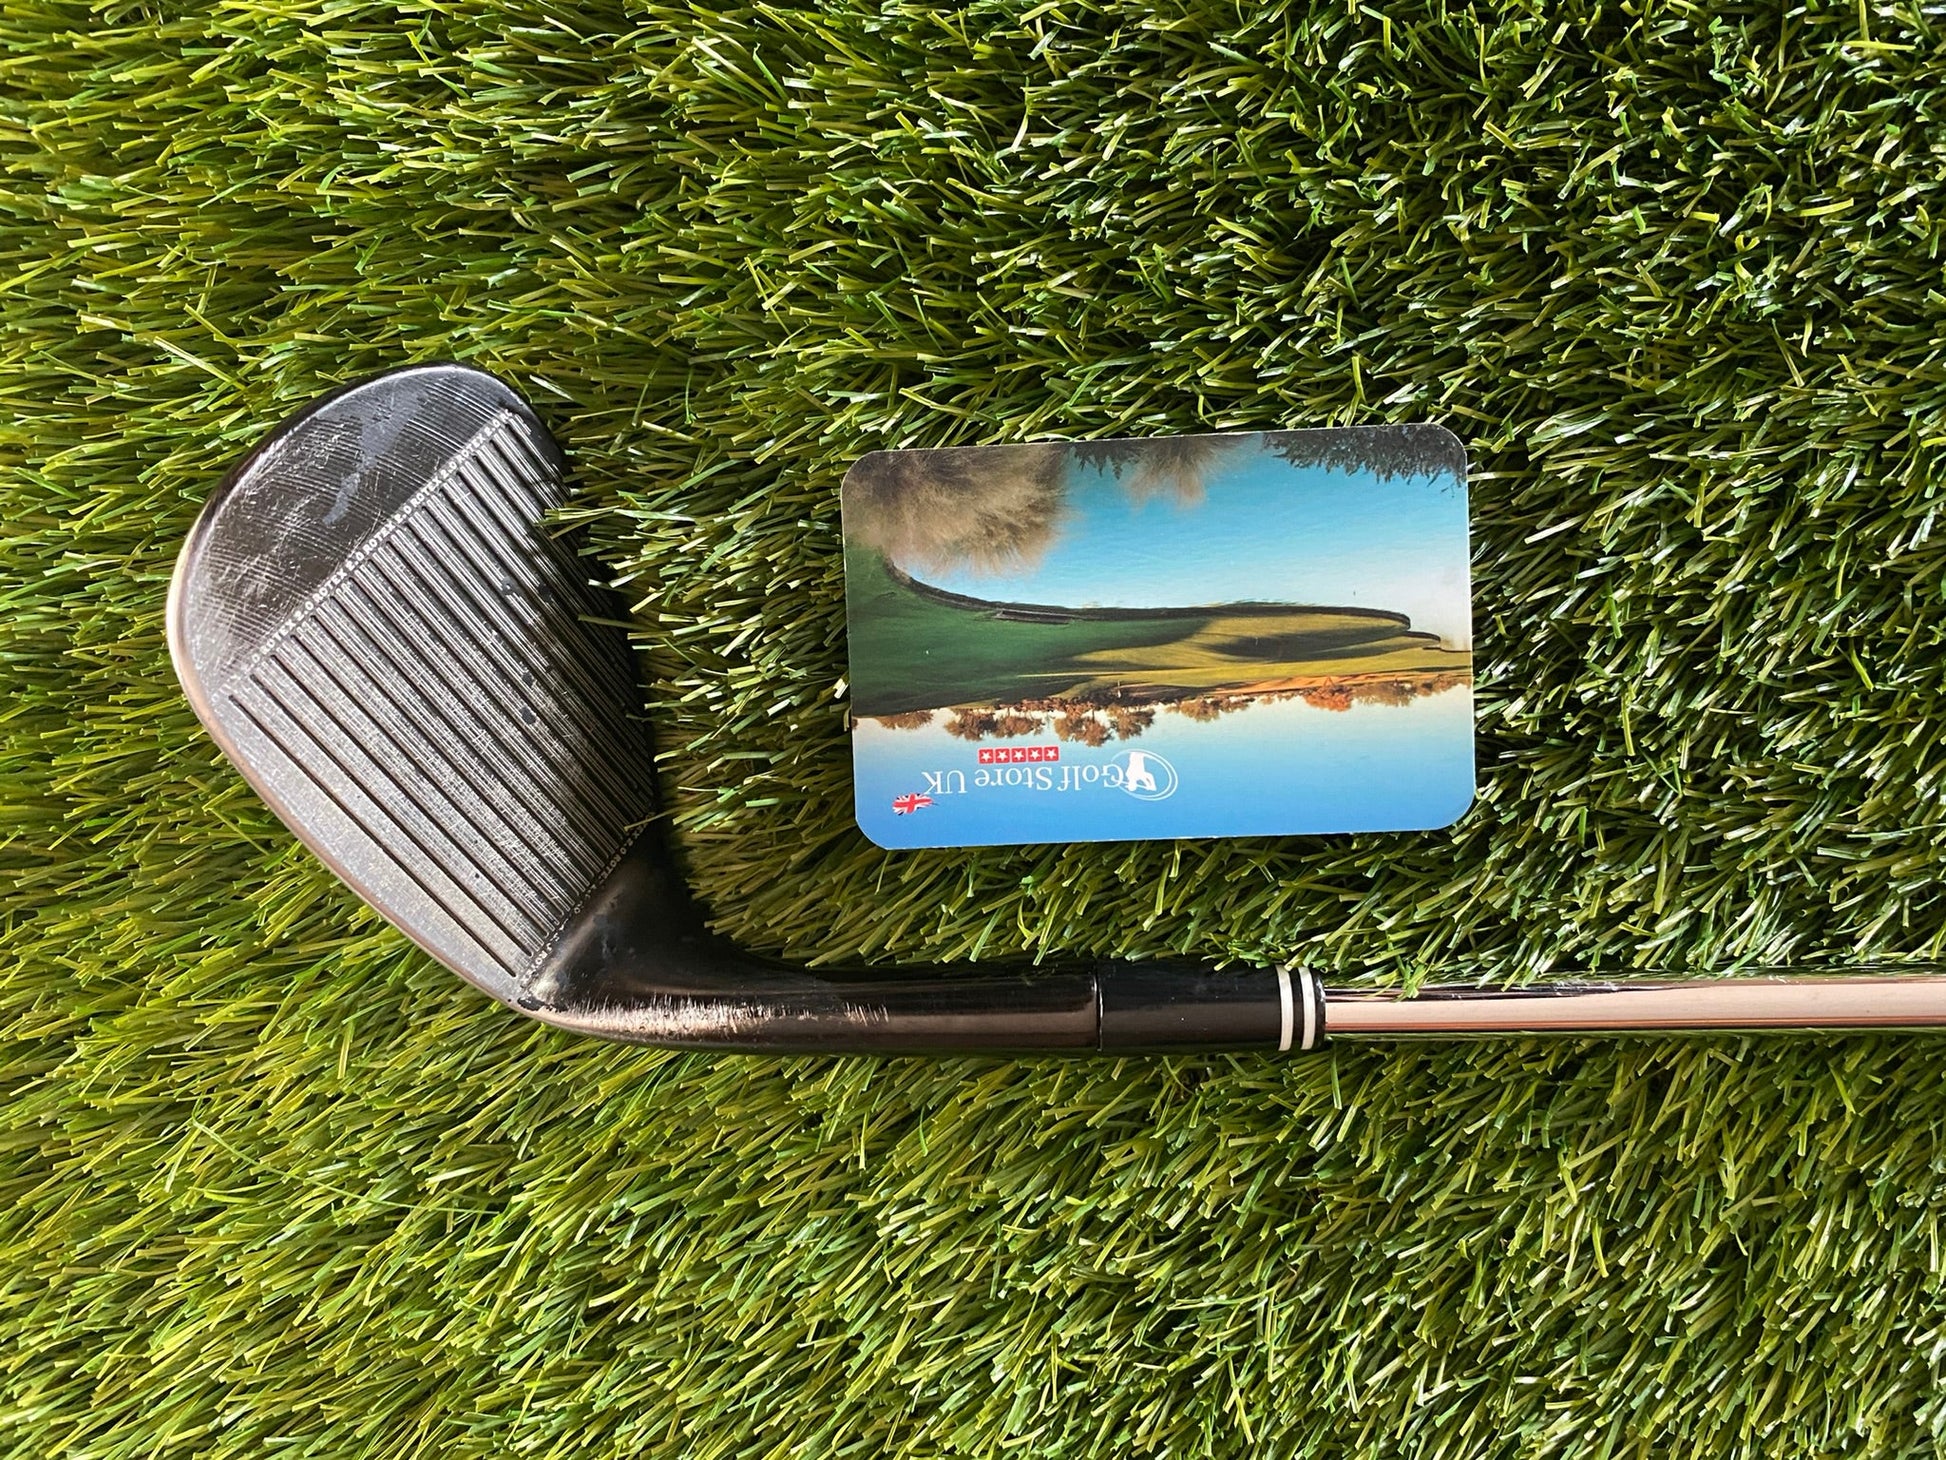 Cleveland RTX 588 60 Degree Wedge - Golf Store UK